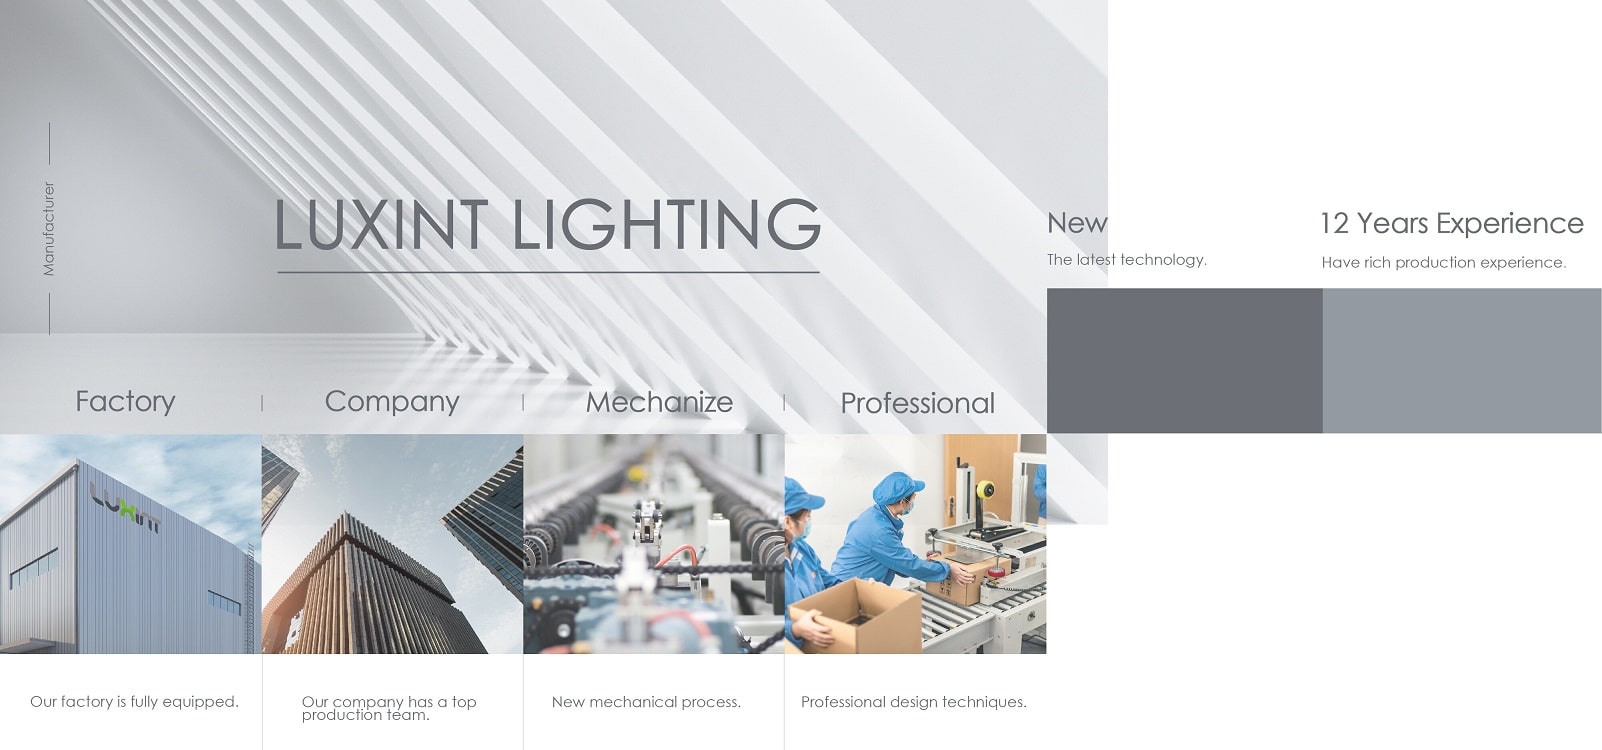 Luxint lighting - outdoor lights manufacturer